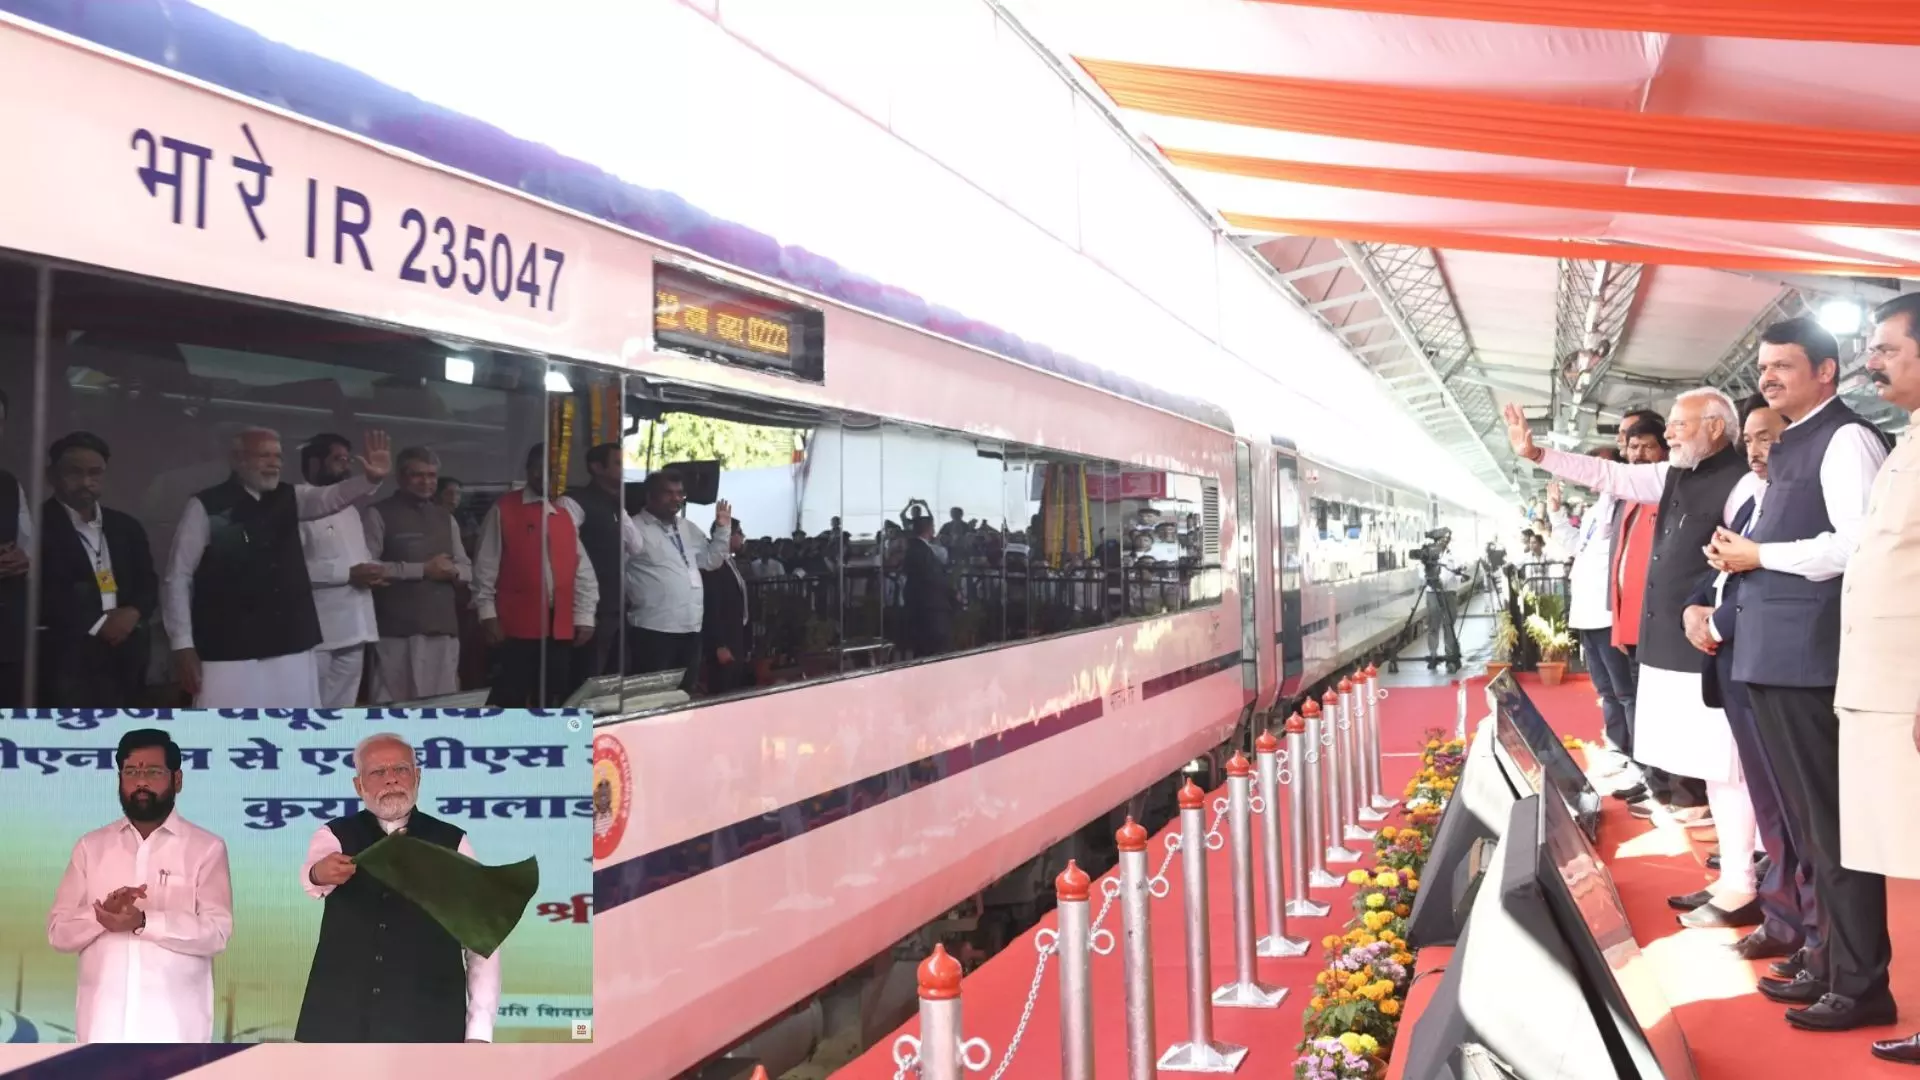 प्रधानमंत्री नरेंद्र मोदी ने छत्रपति शिवाजी महाराज टर्मिनस से 2 वंदे भारत एक्सप्रेस ट्रेनों को झंडी दिखाकर रवाना किया।